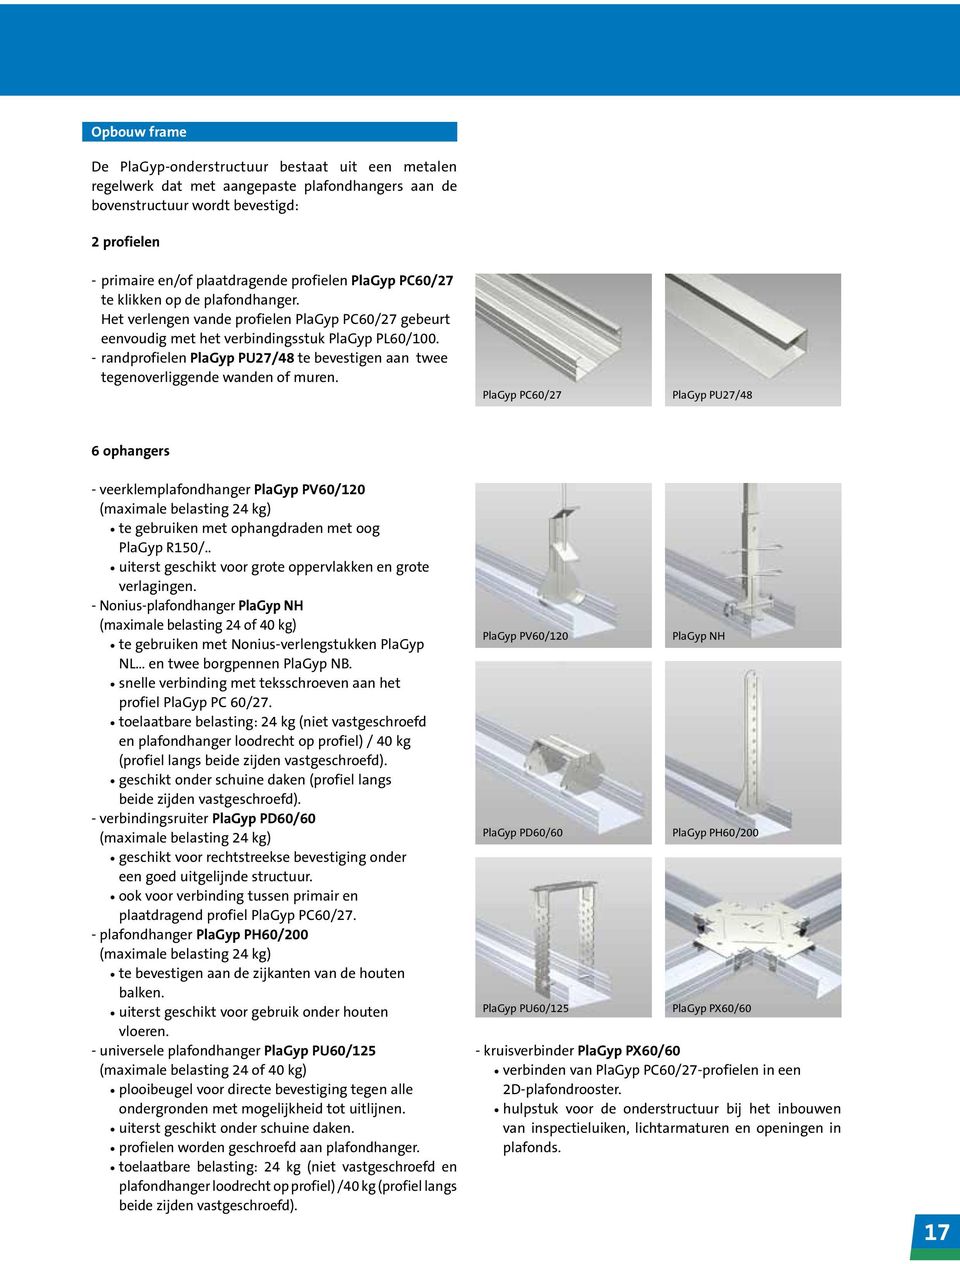 6 ophangers - veerklemplafondhanger te gebruiken met ophangdraden met oog R150/.. uiterst geschikt voor grote oppervlakken en grote verlagingen.